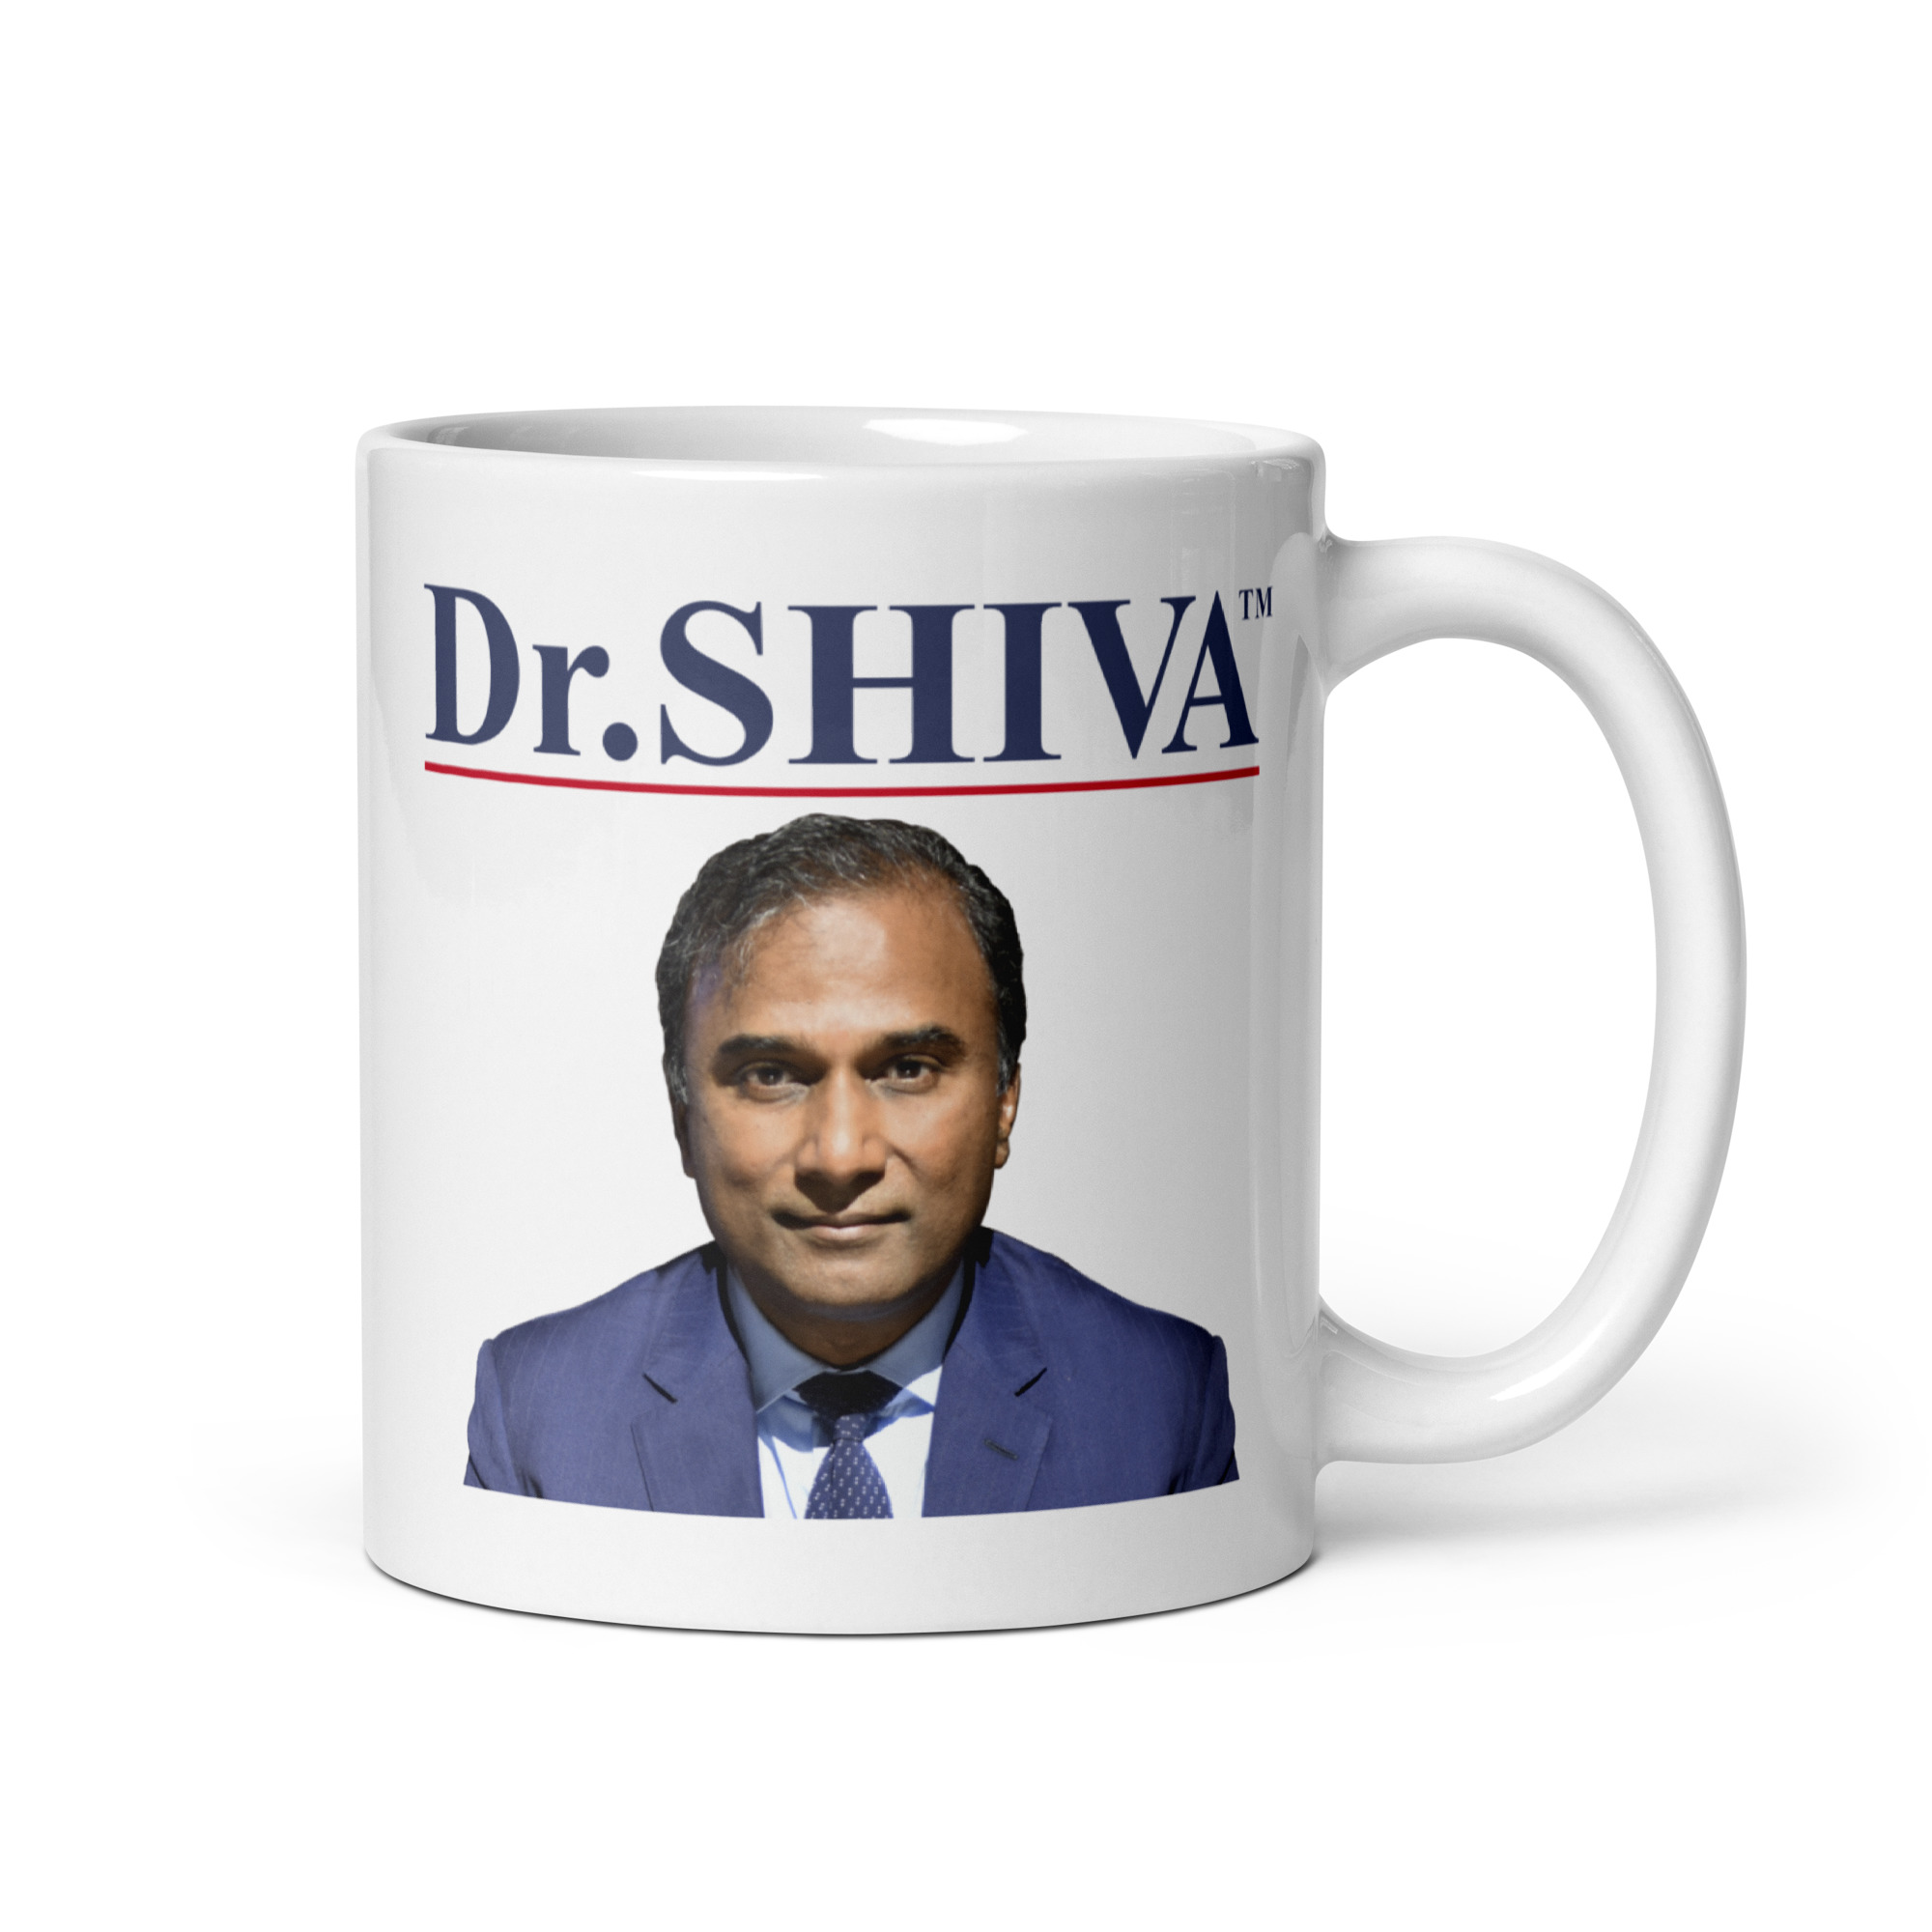 Dr.SHIVA™ White glossy mug